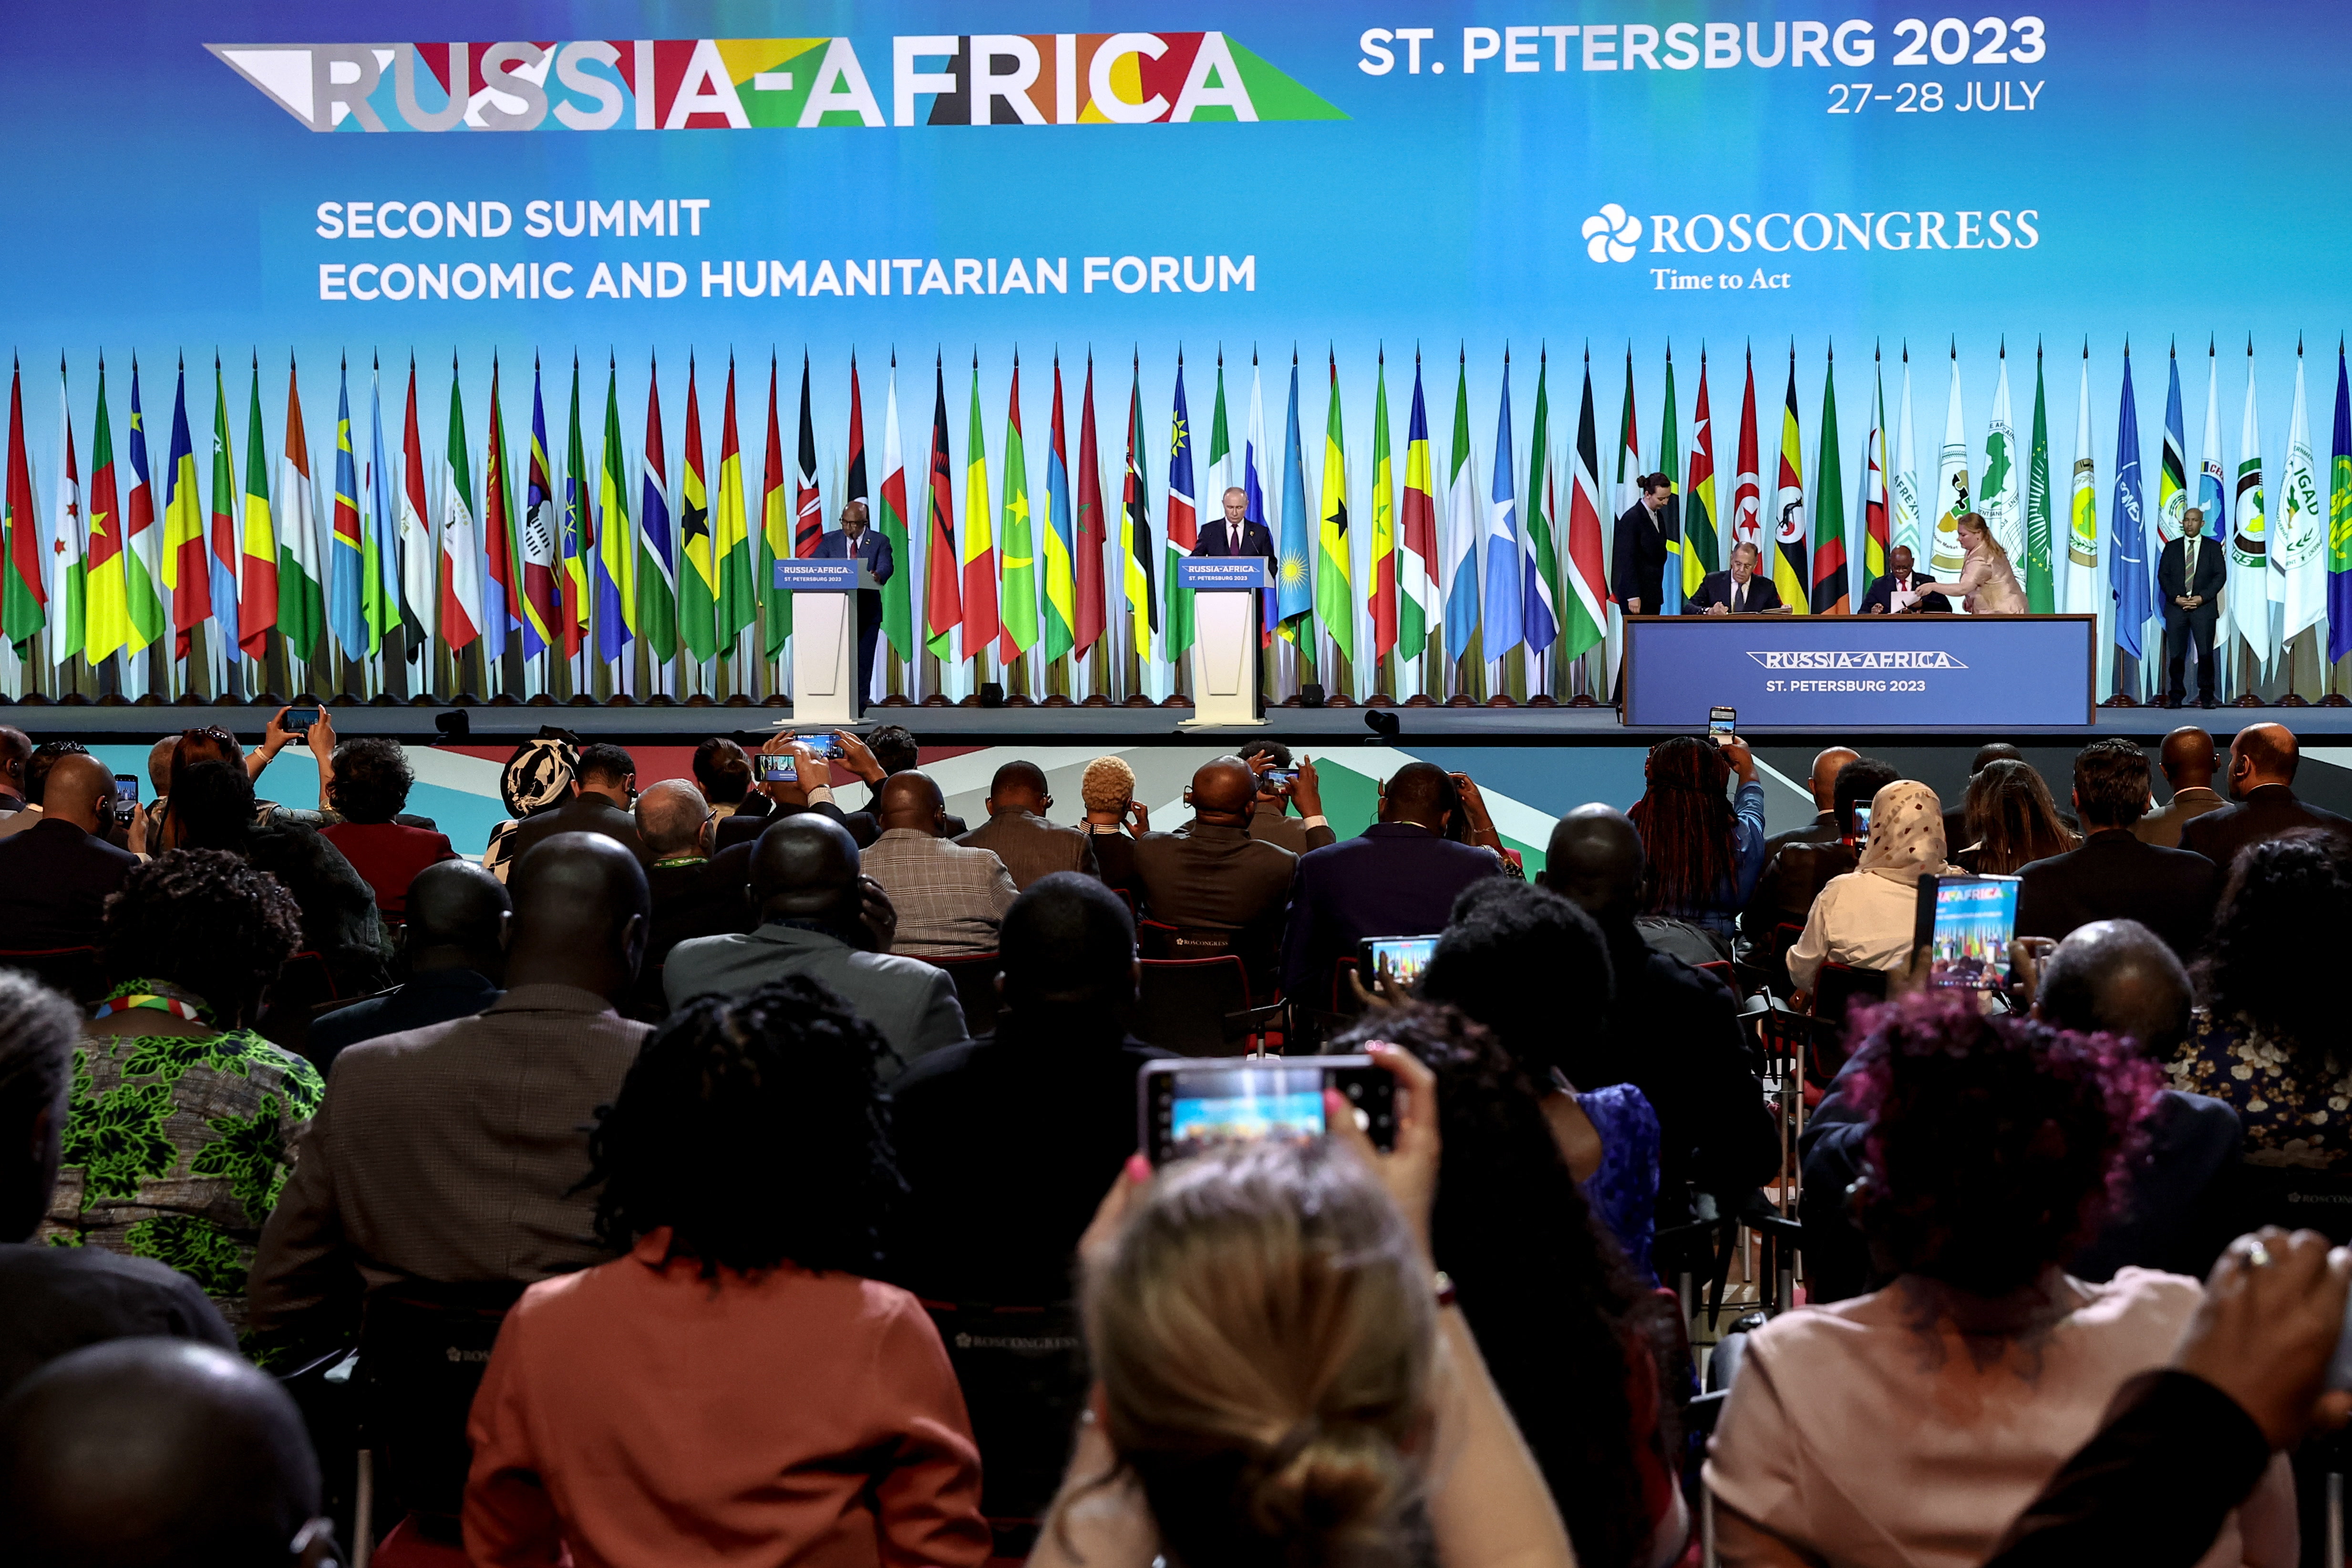 В Росконгрессе подвели итоги второго саммита Россия — Африка